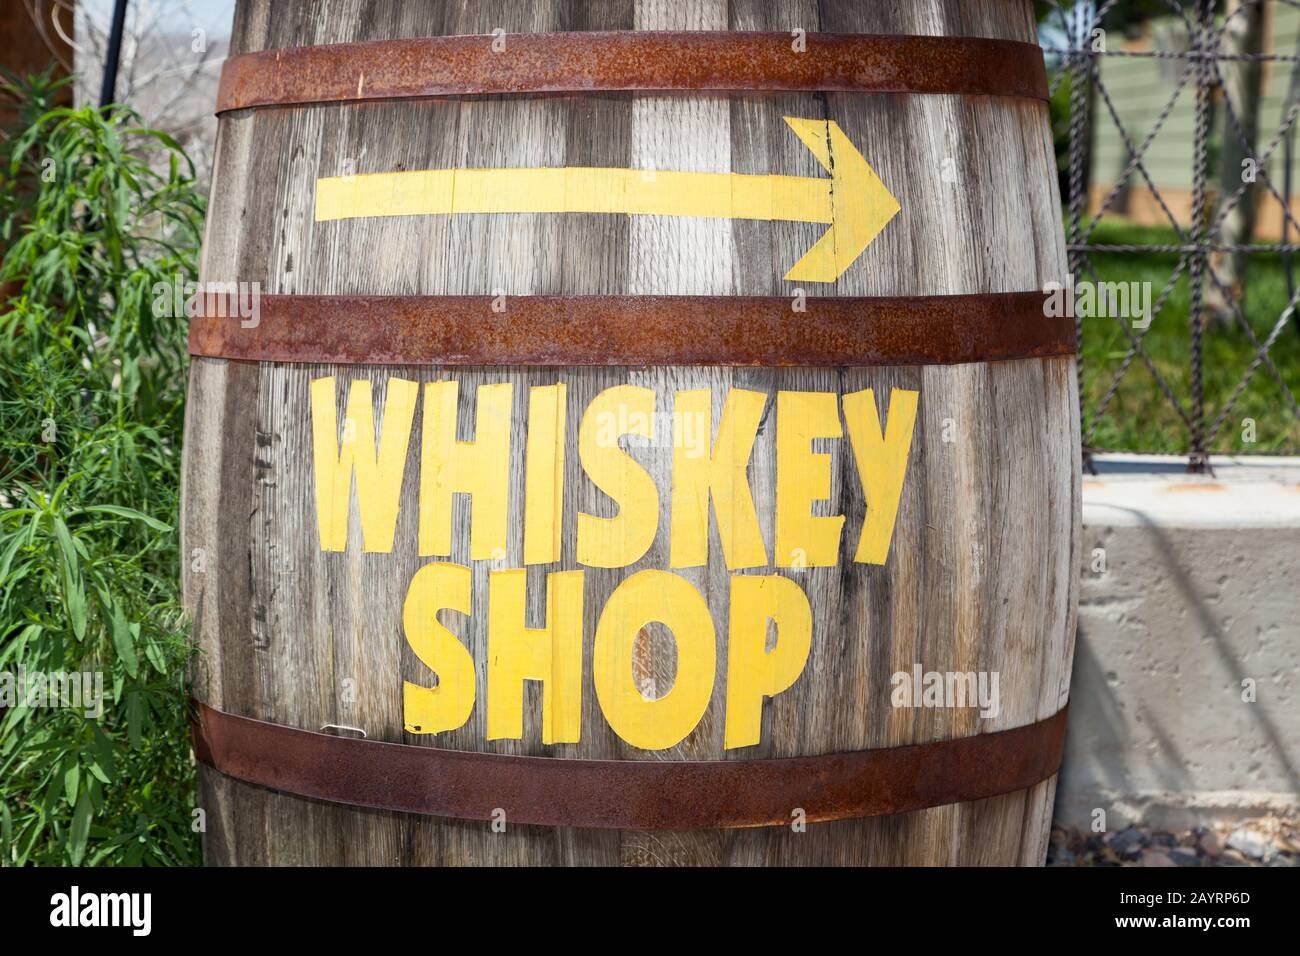 Un vecchio barile di whisky con bande arrugginite è dipinto con le parole whiskey shop e una freccia che punta la direzione. Foto Stock